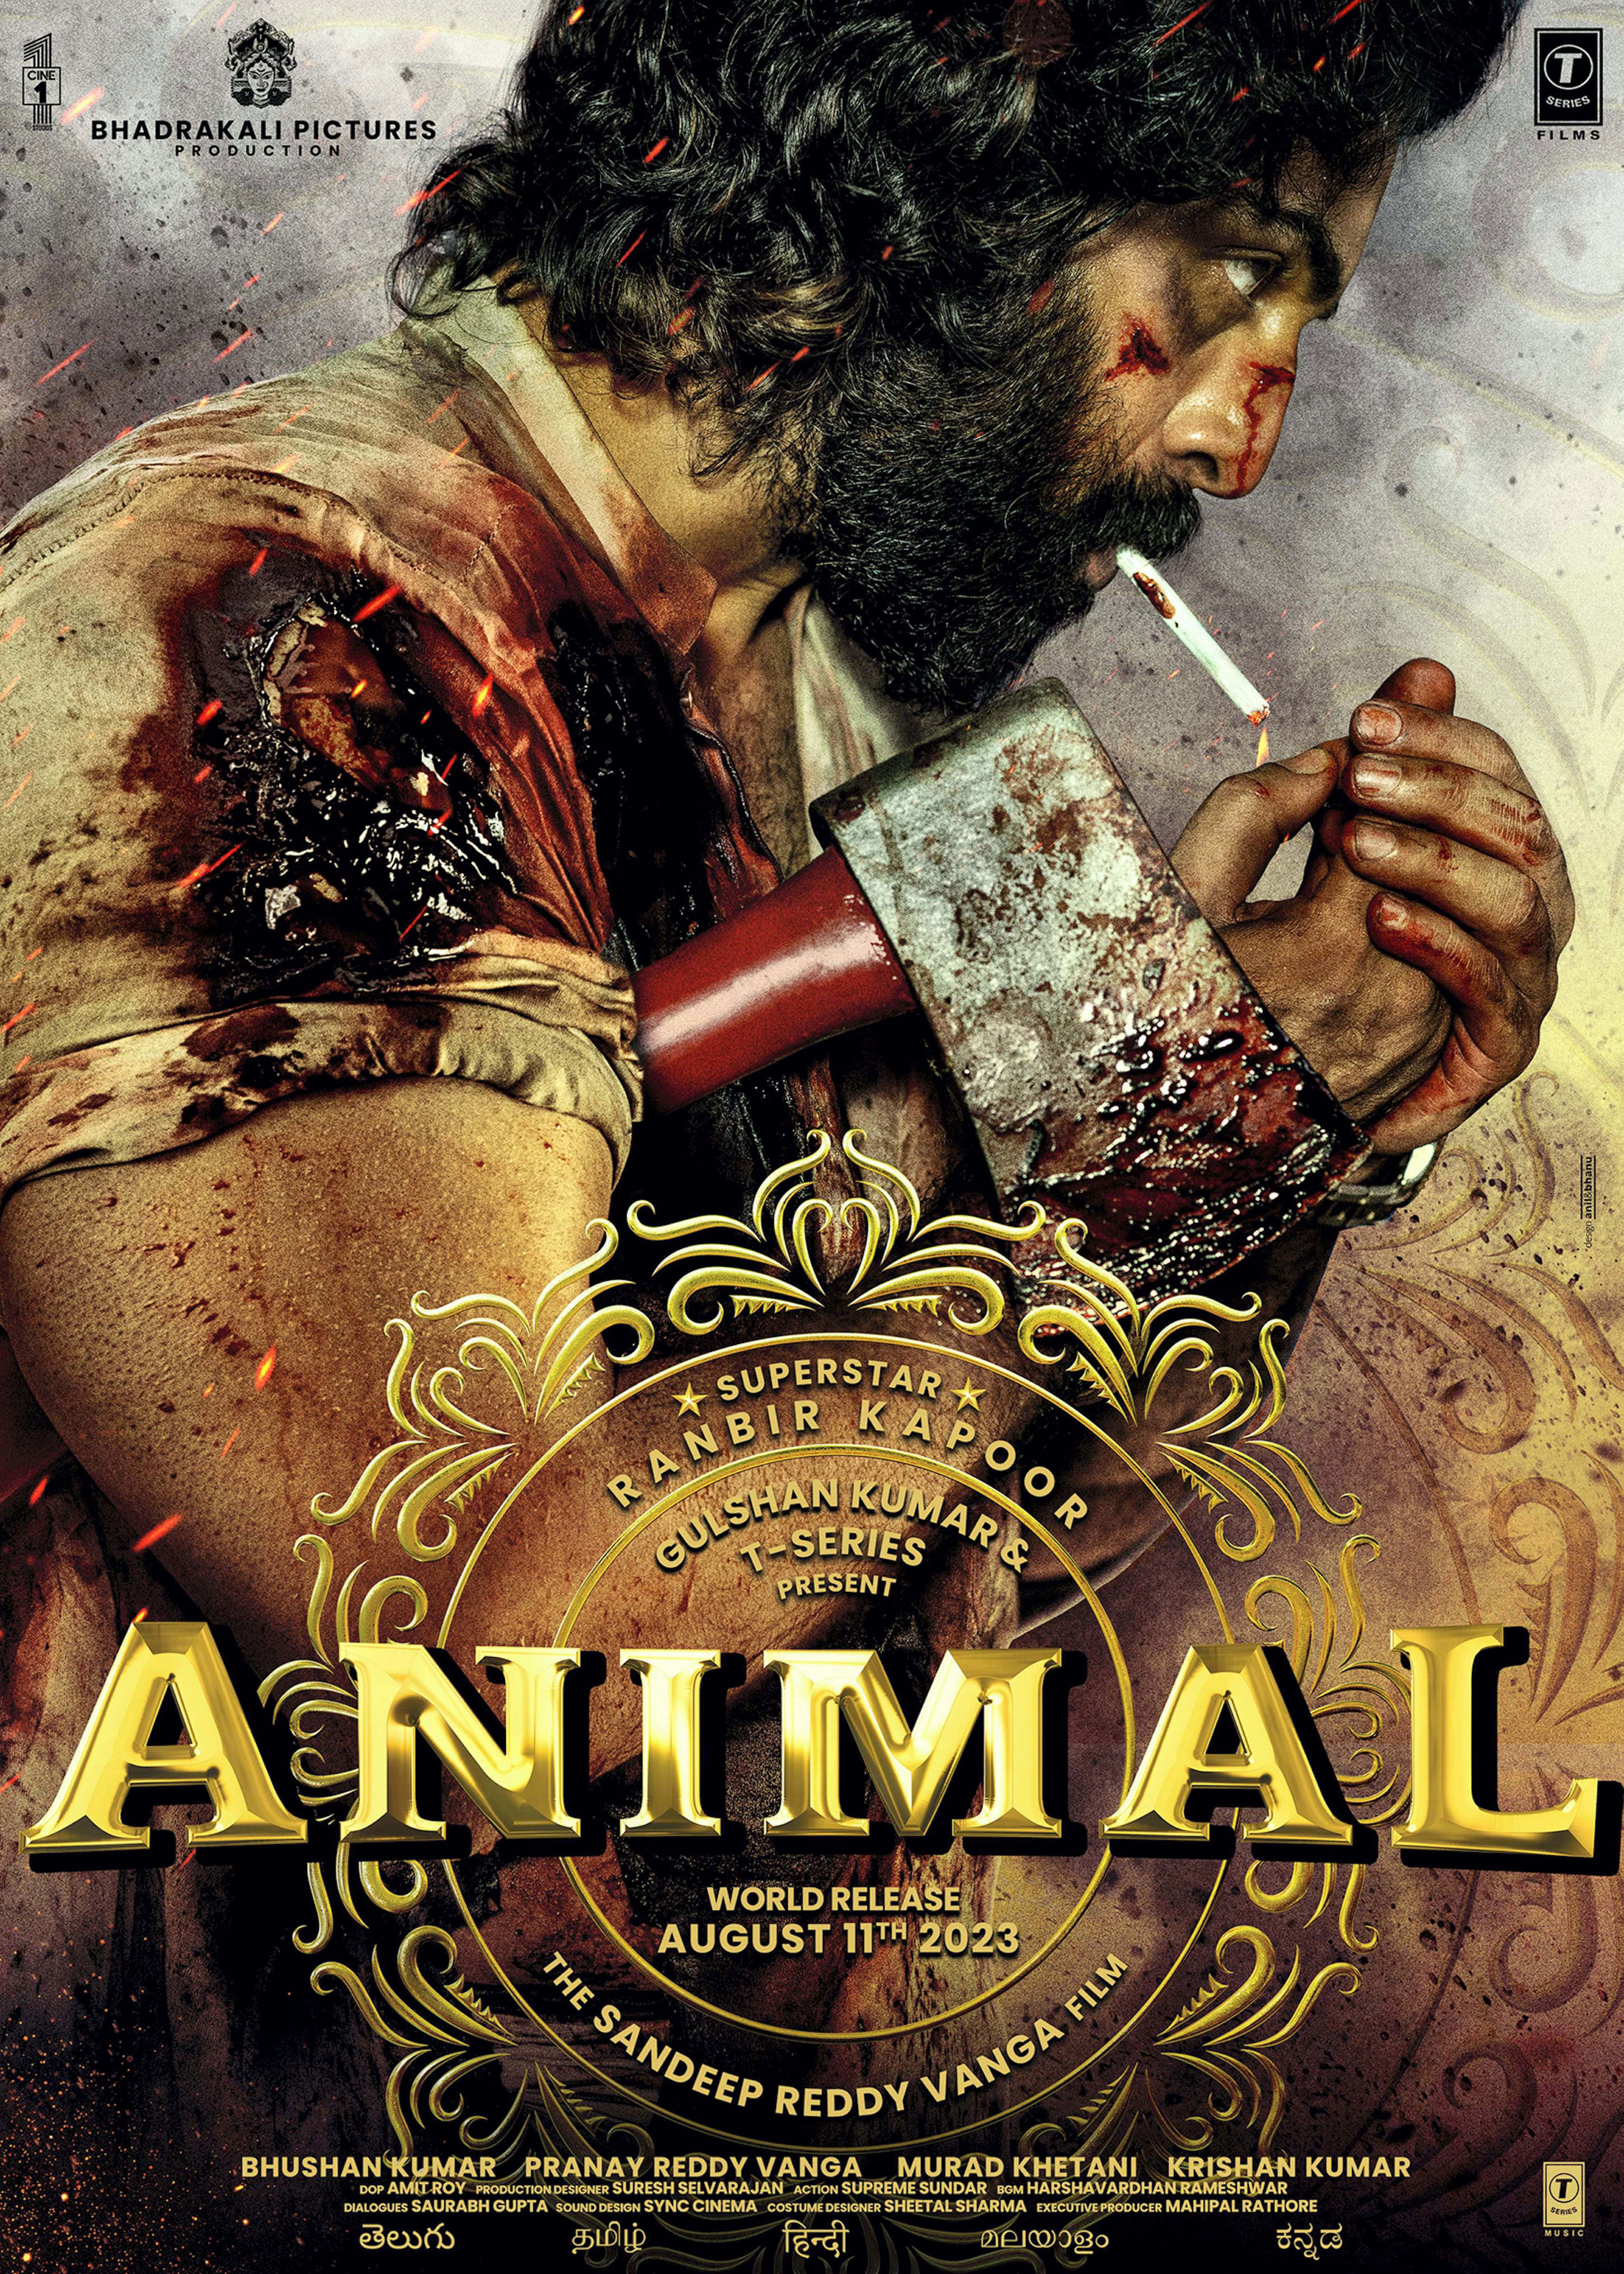 Animal' shook me up as an actor: Ranbir Kapoor